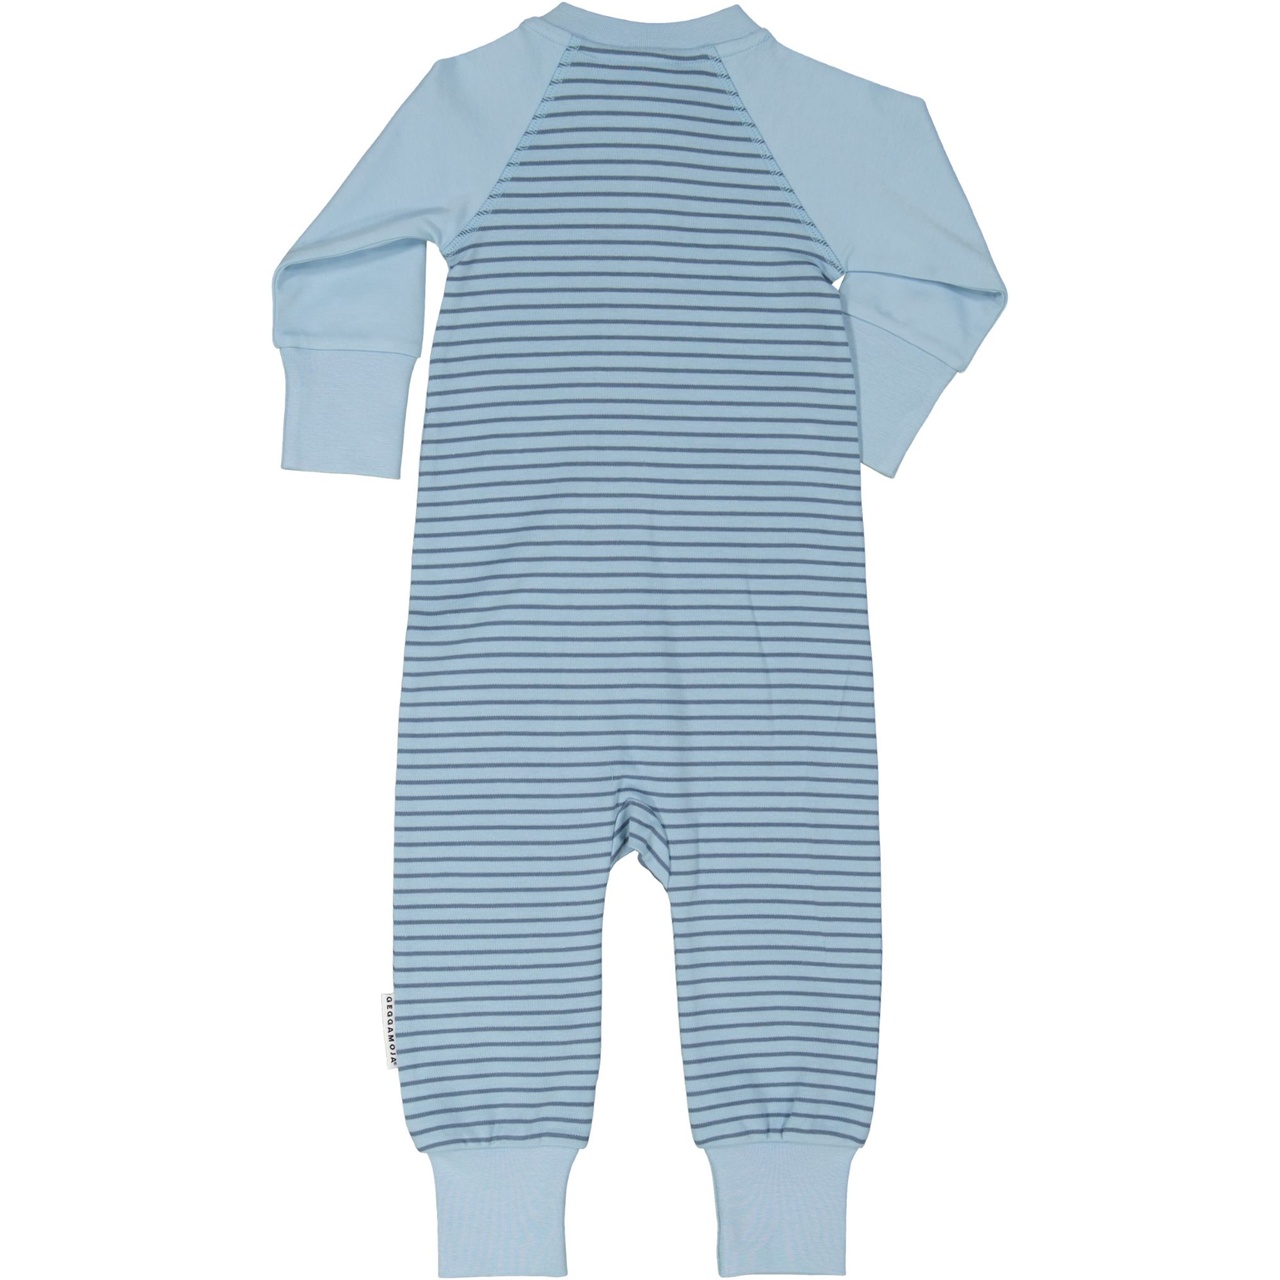 Pyjamas L.blue/blue98/104